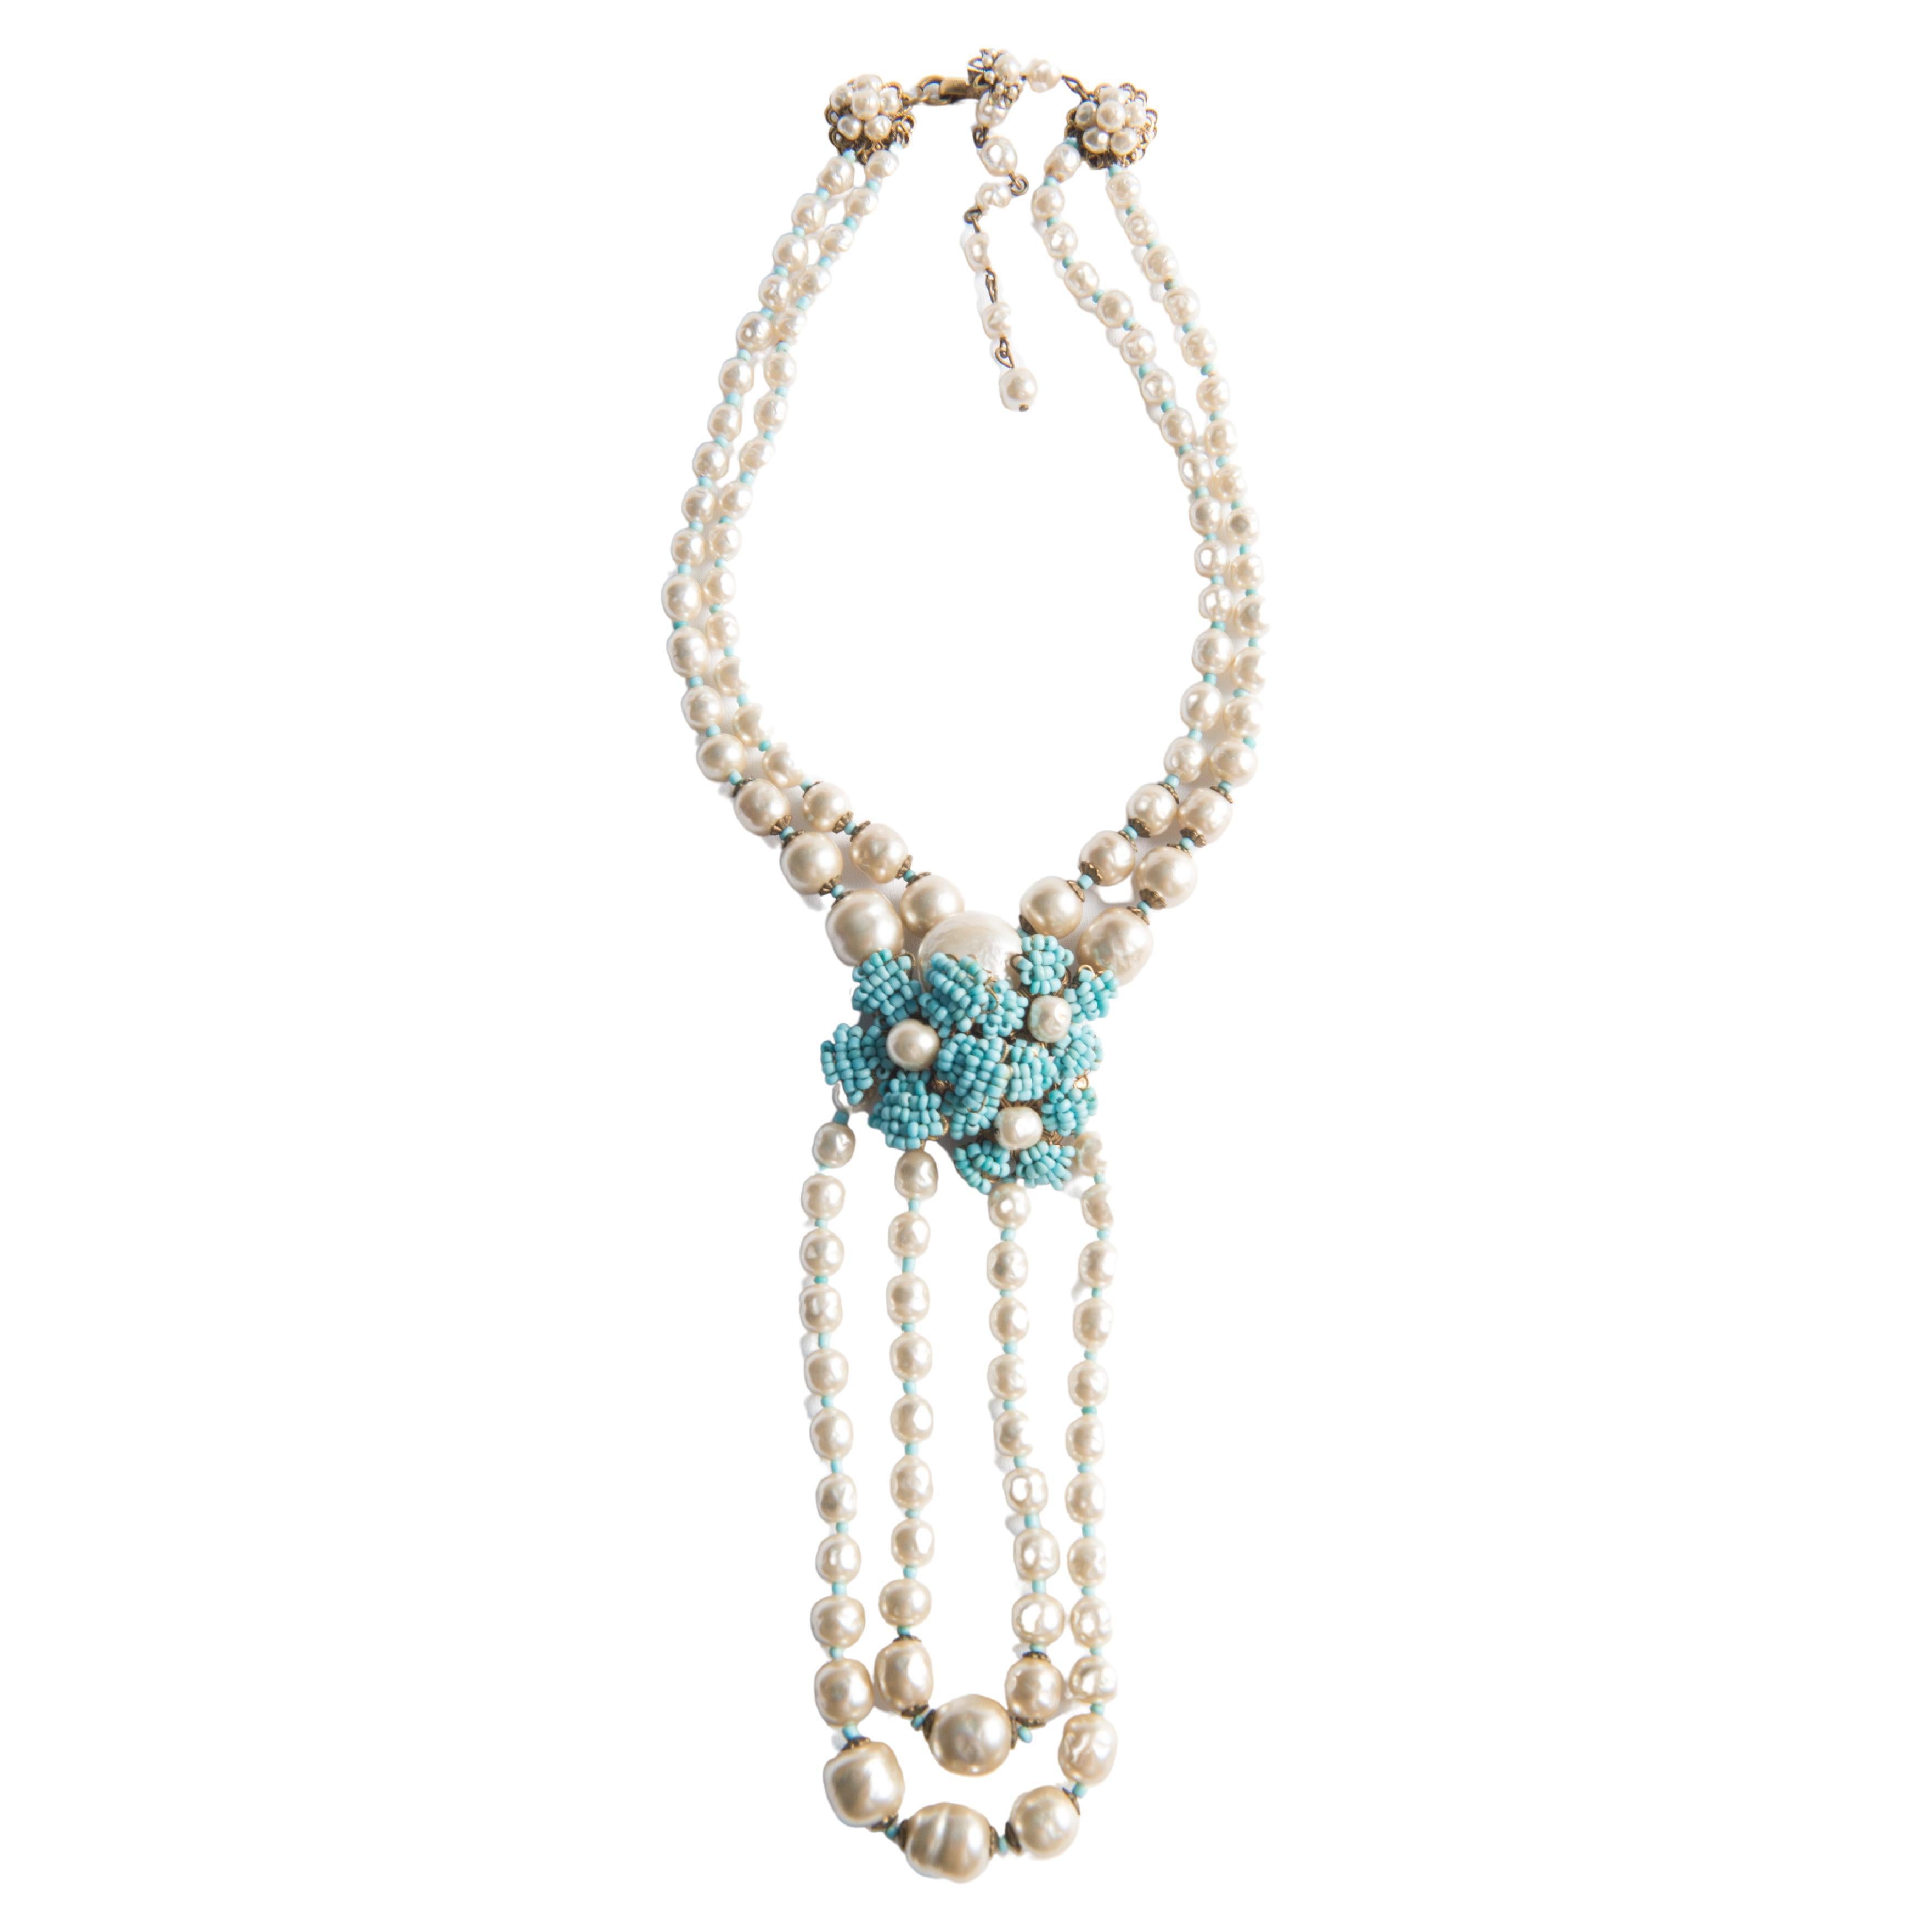 Ein Miriam Haskell Stunning Perle und Türkis Perlen Halskette und Armband gesetzt. Halskette Cluster und hängende untere doppelte Perlenstränge sind 6